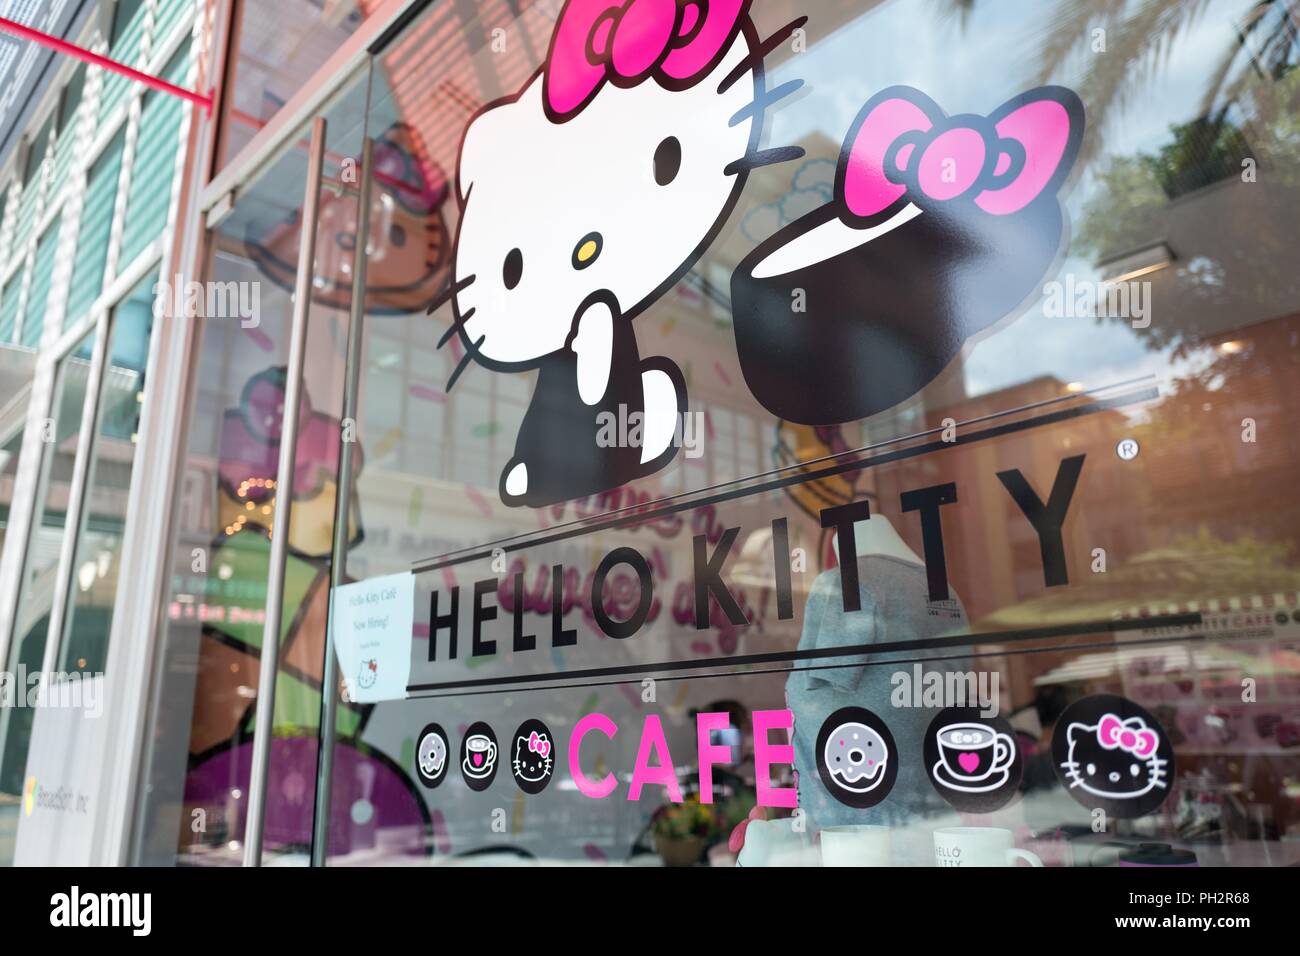 Façade de l'Hello Kitty Café, un café ouvert récemment exploité par la compagnie japonaise Sanrio, sur Santana Row dans la Silicon Valley, San Jose, Californie, le 18 juillet 2018. () Banque D'Images